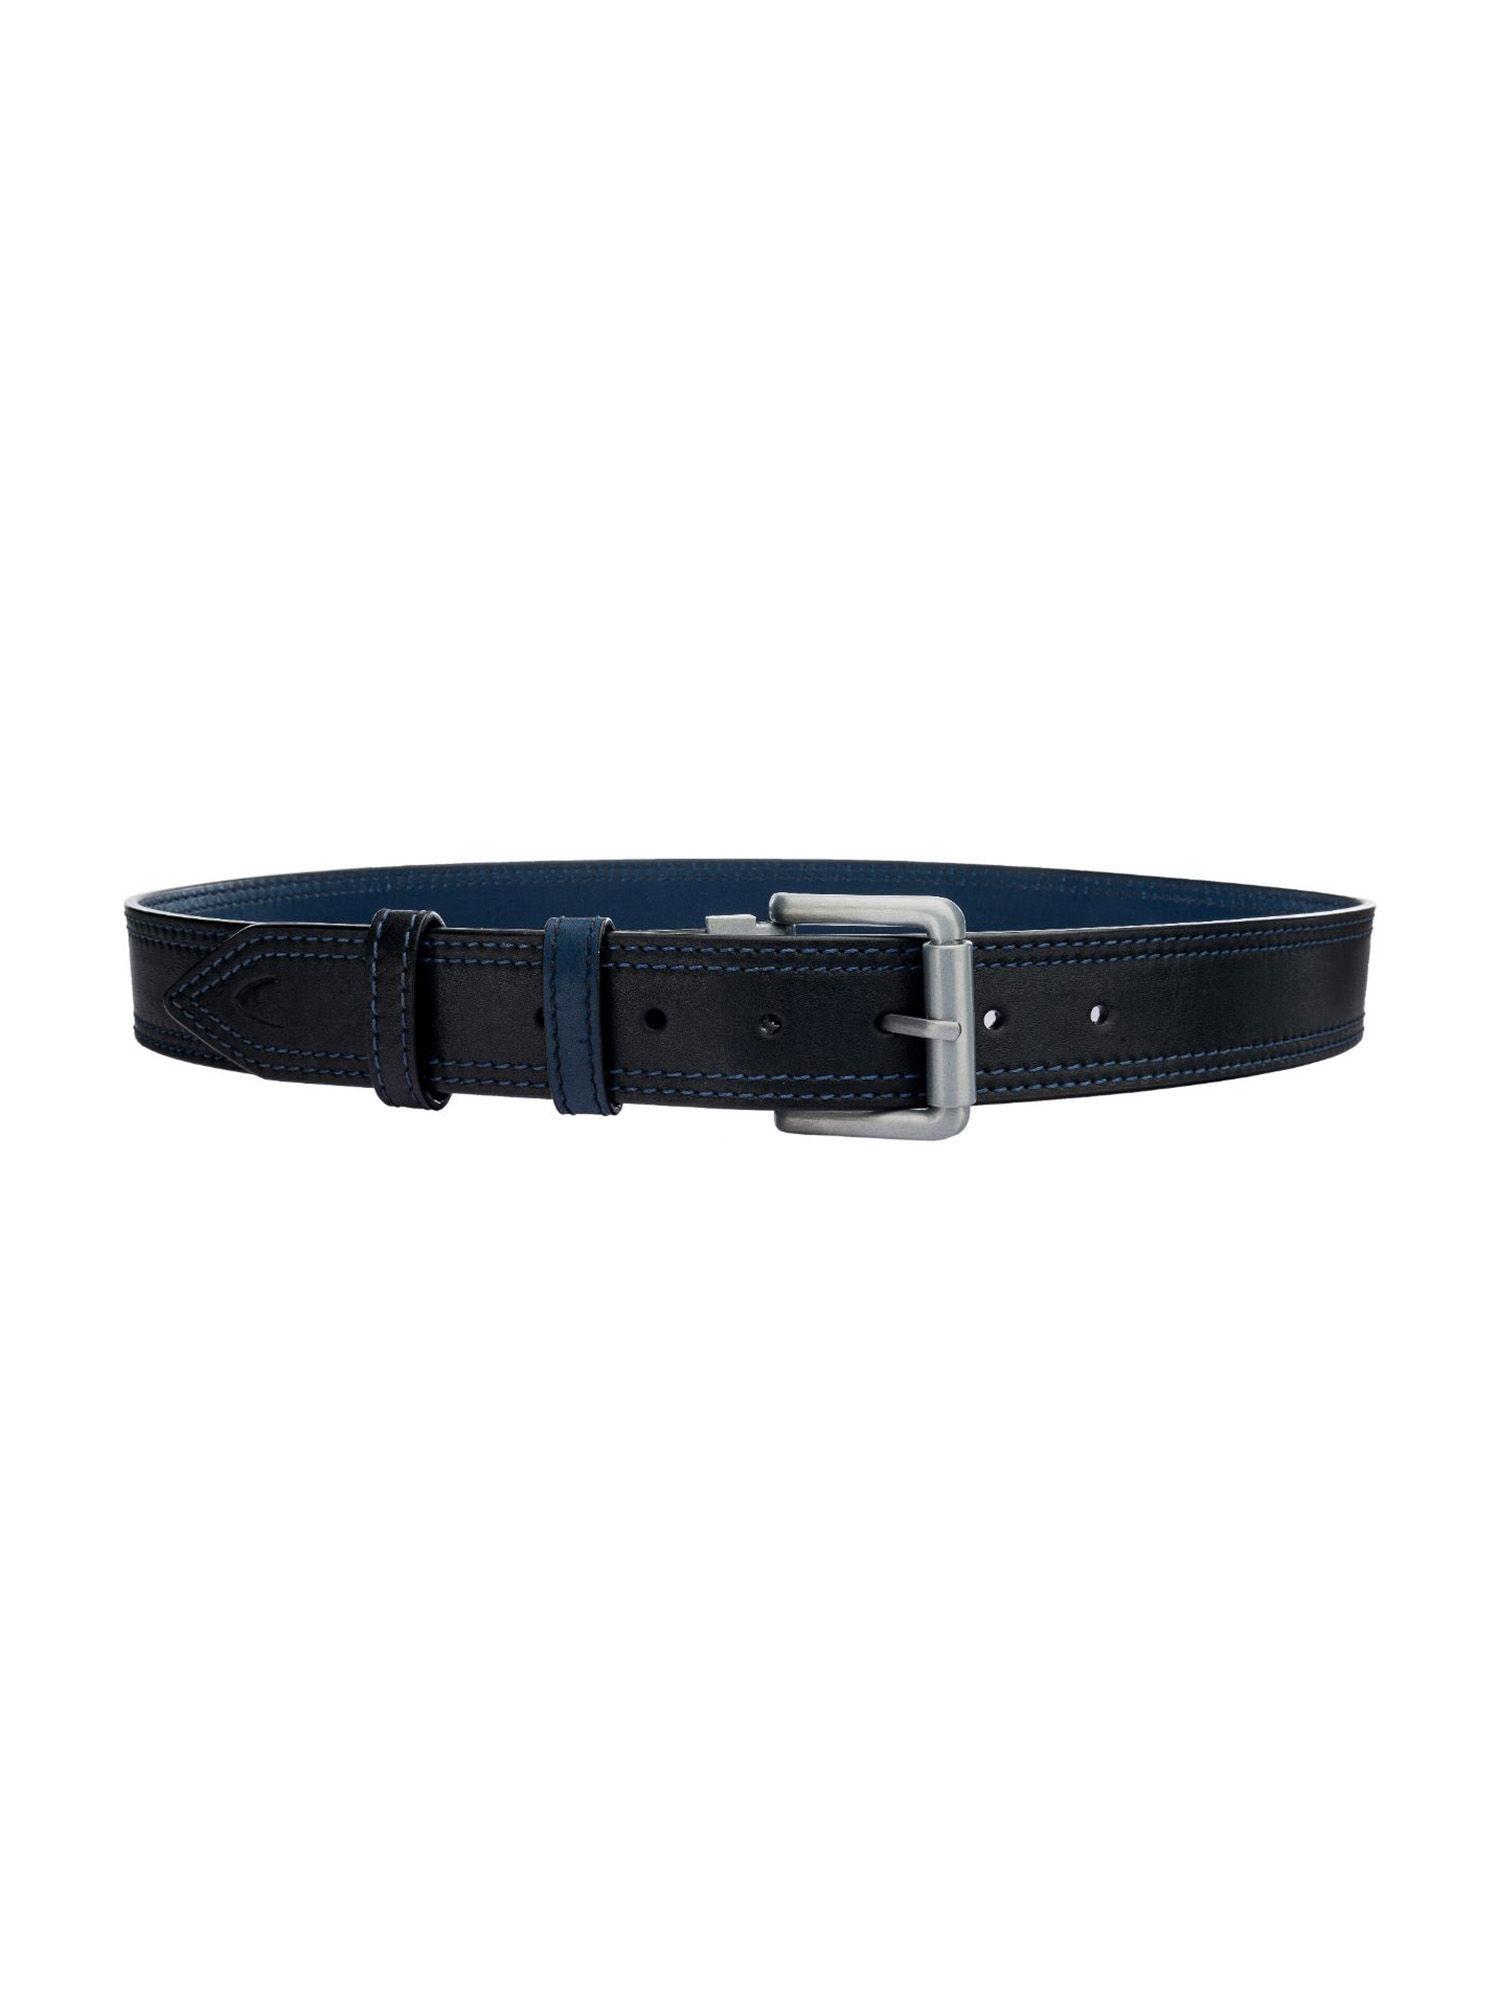 men's belt reversible black